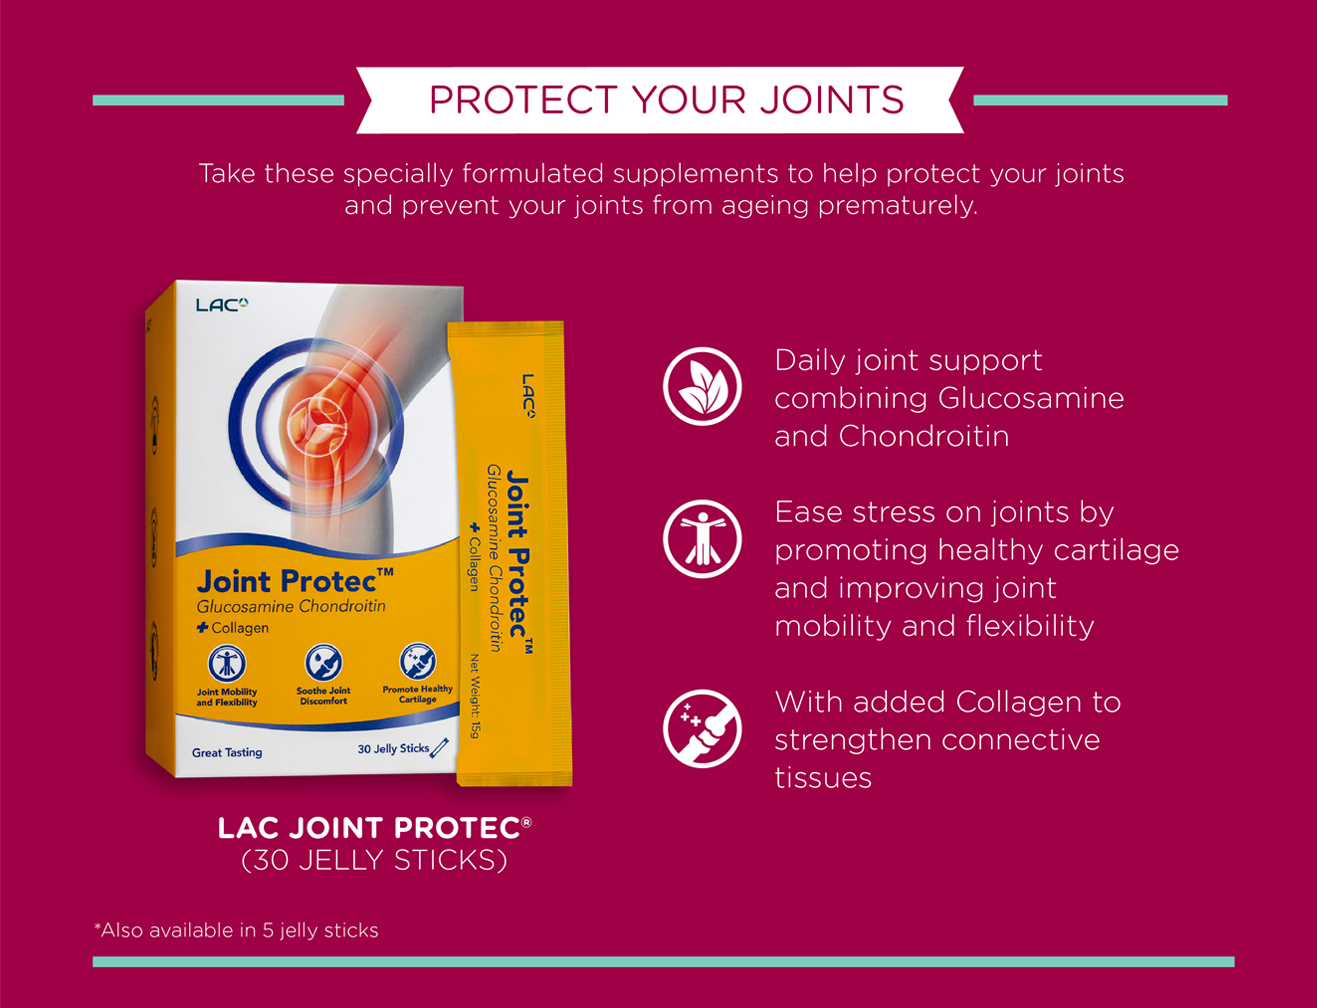 LAC Jont Prote Glusoamin Chondroitin + Collagen (30 Jelly Sticks)